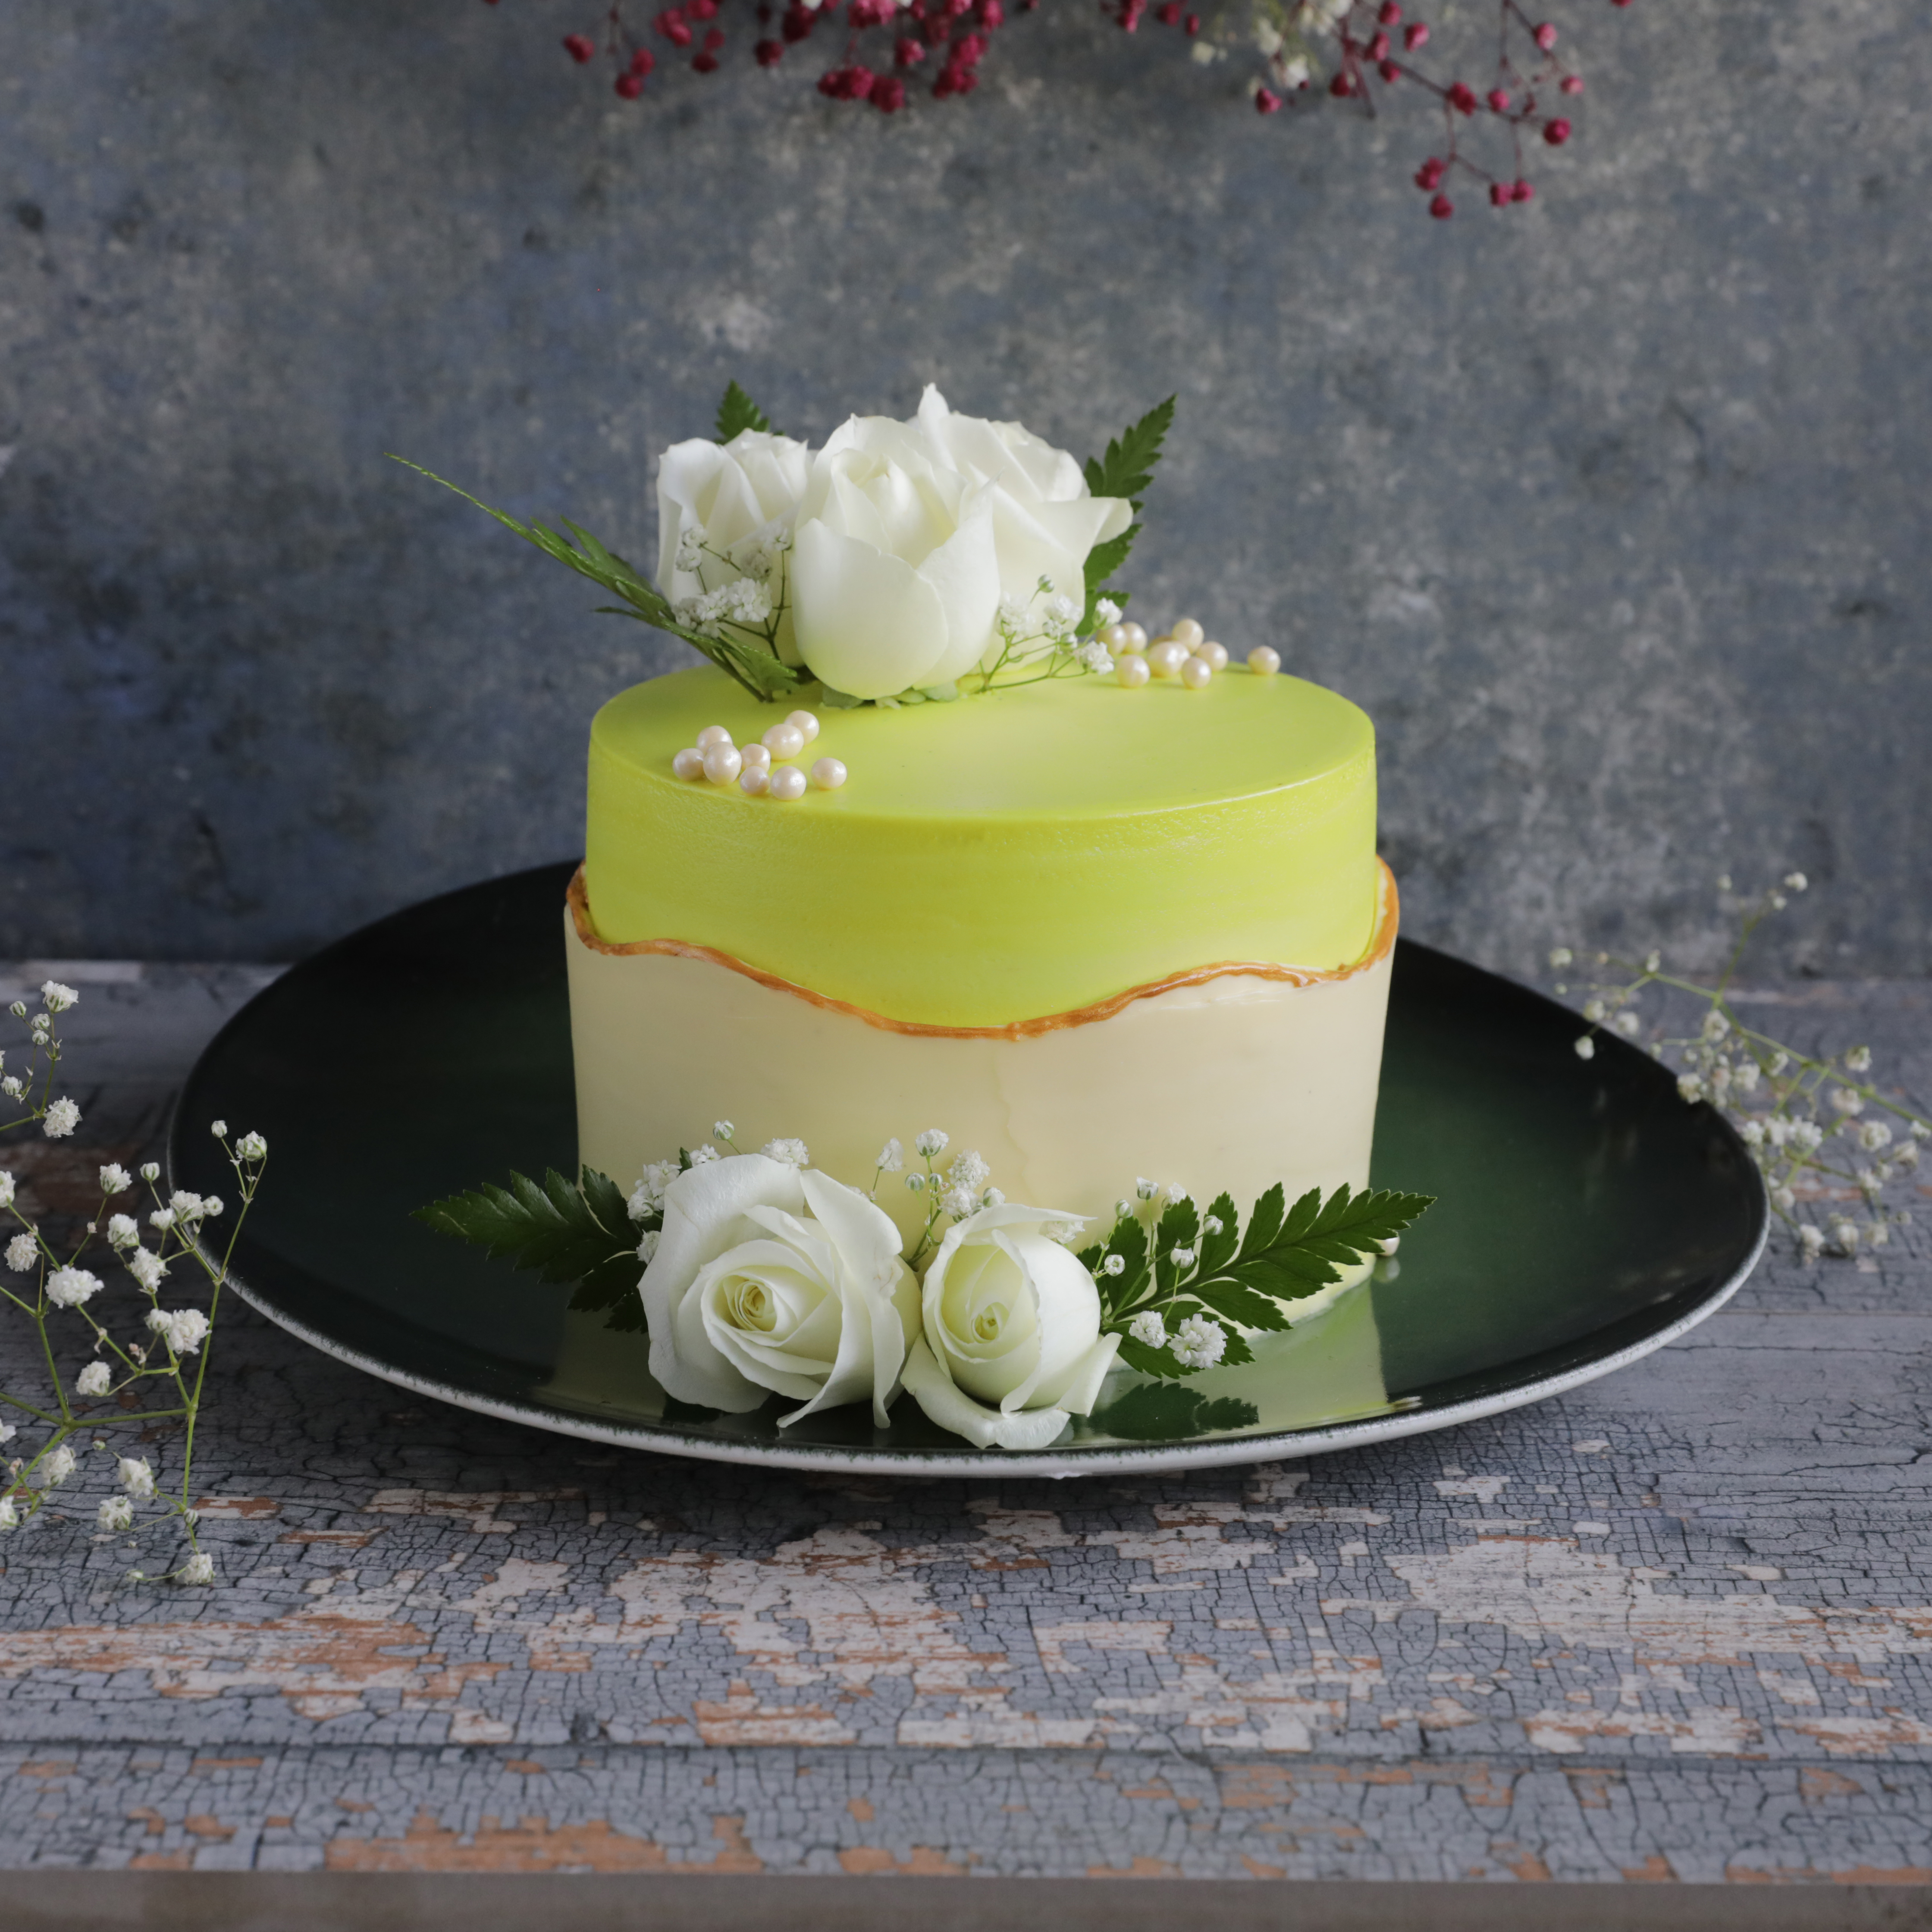 Order Green Rosette Cake Online From Cakey Bakey Bhubaneswarbhubaneswar